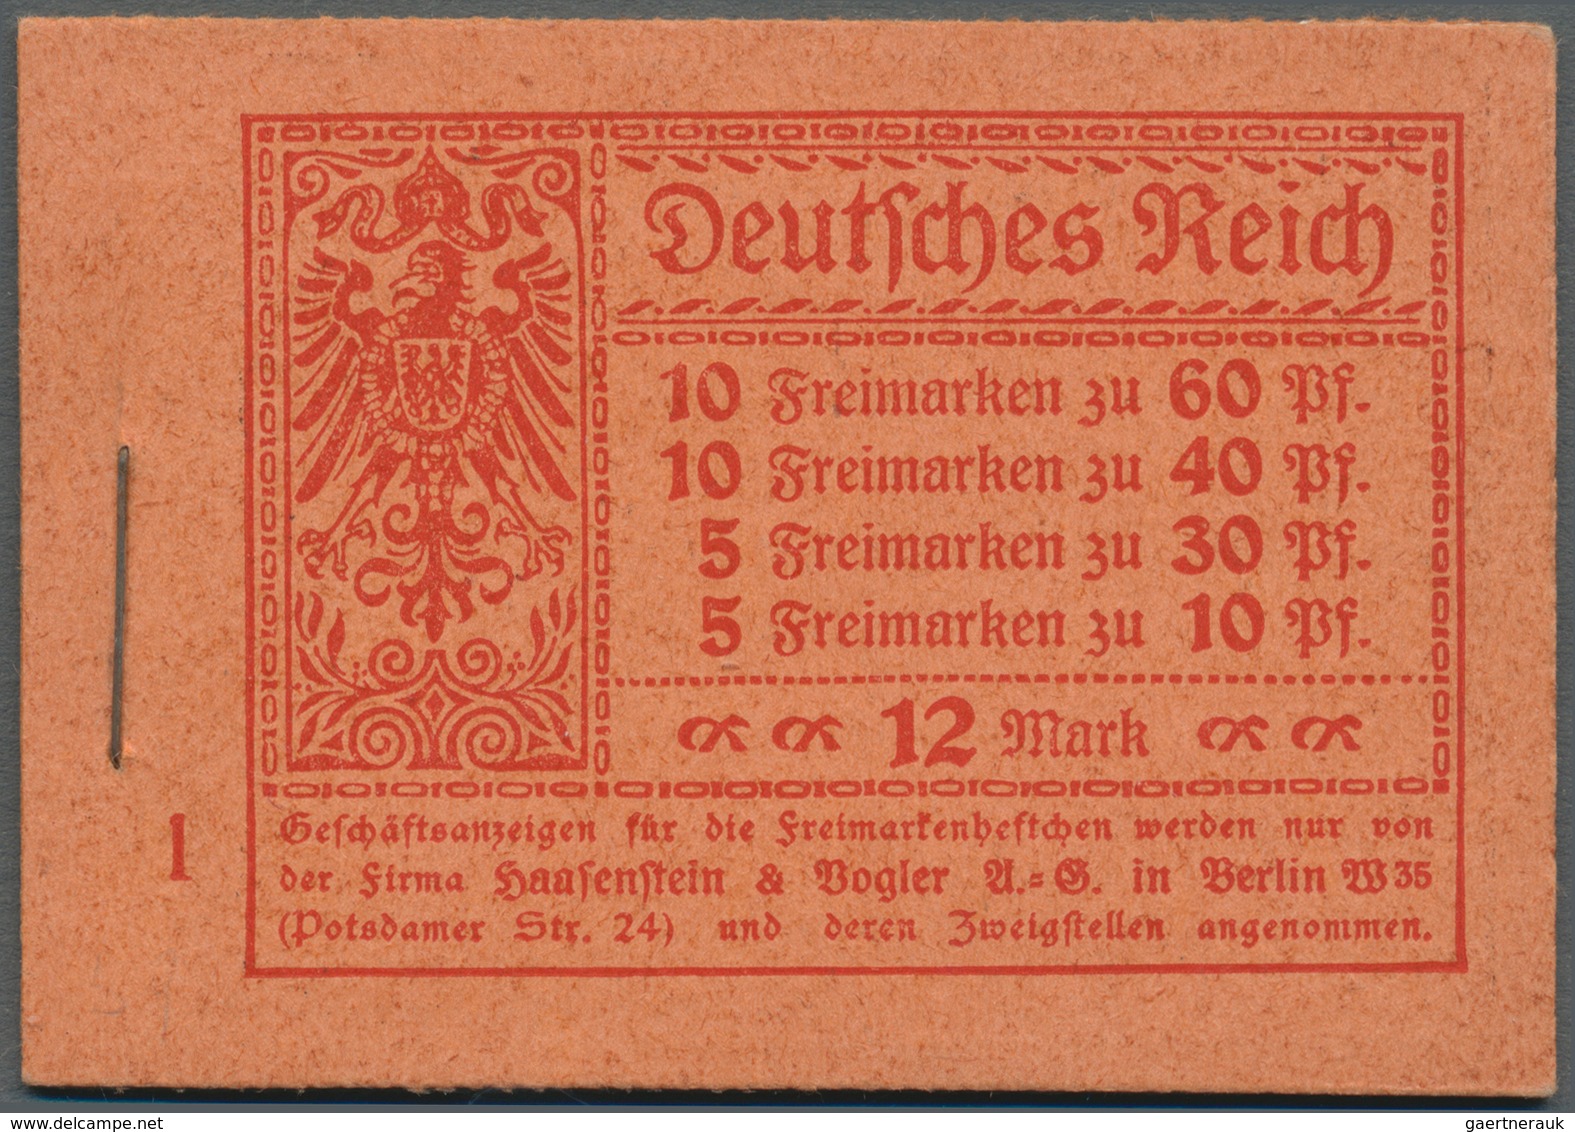 Deutsches Reich - Markenheftchen: 1921, 12 M. Germania-Heftchen Mit ONr. 1, Heftchen-Rand Dgz., Post - Libretti